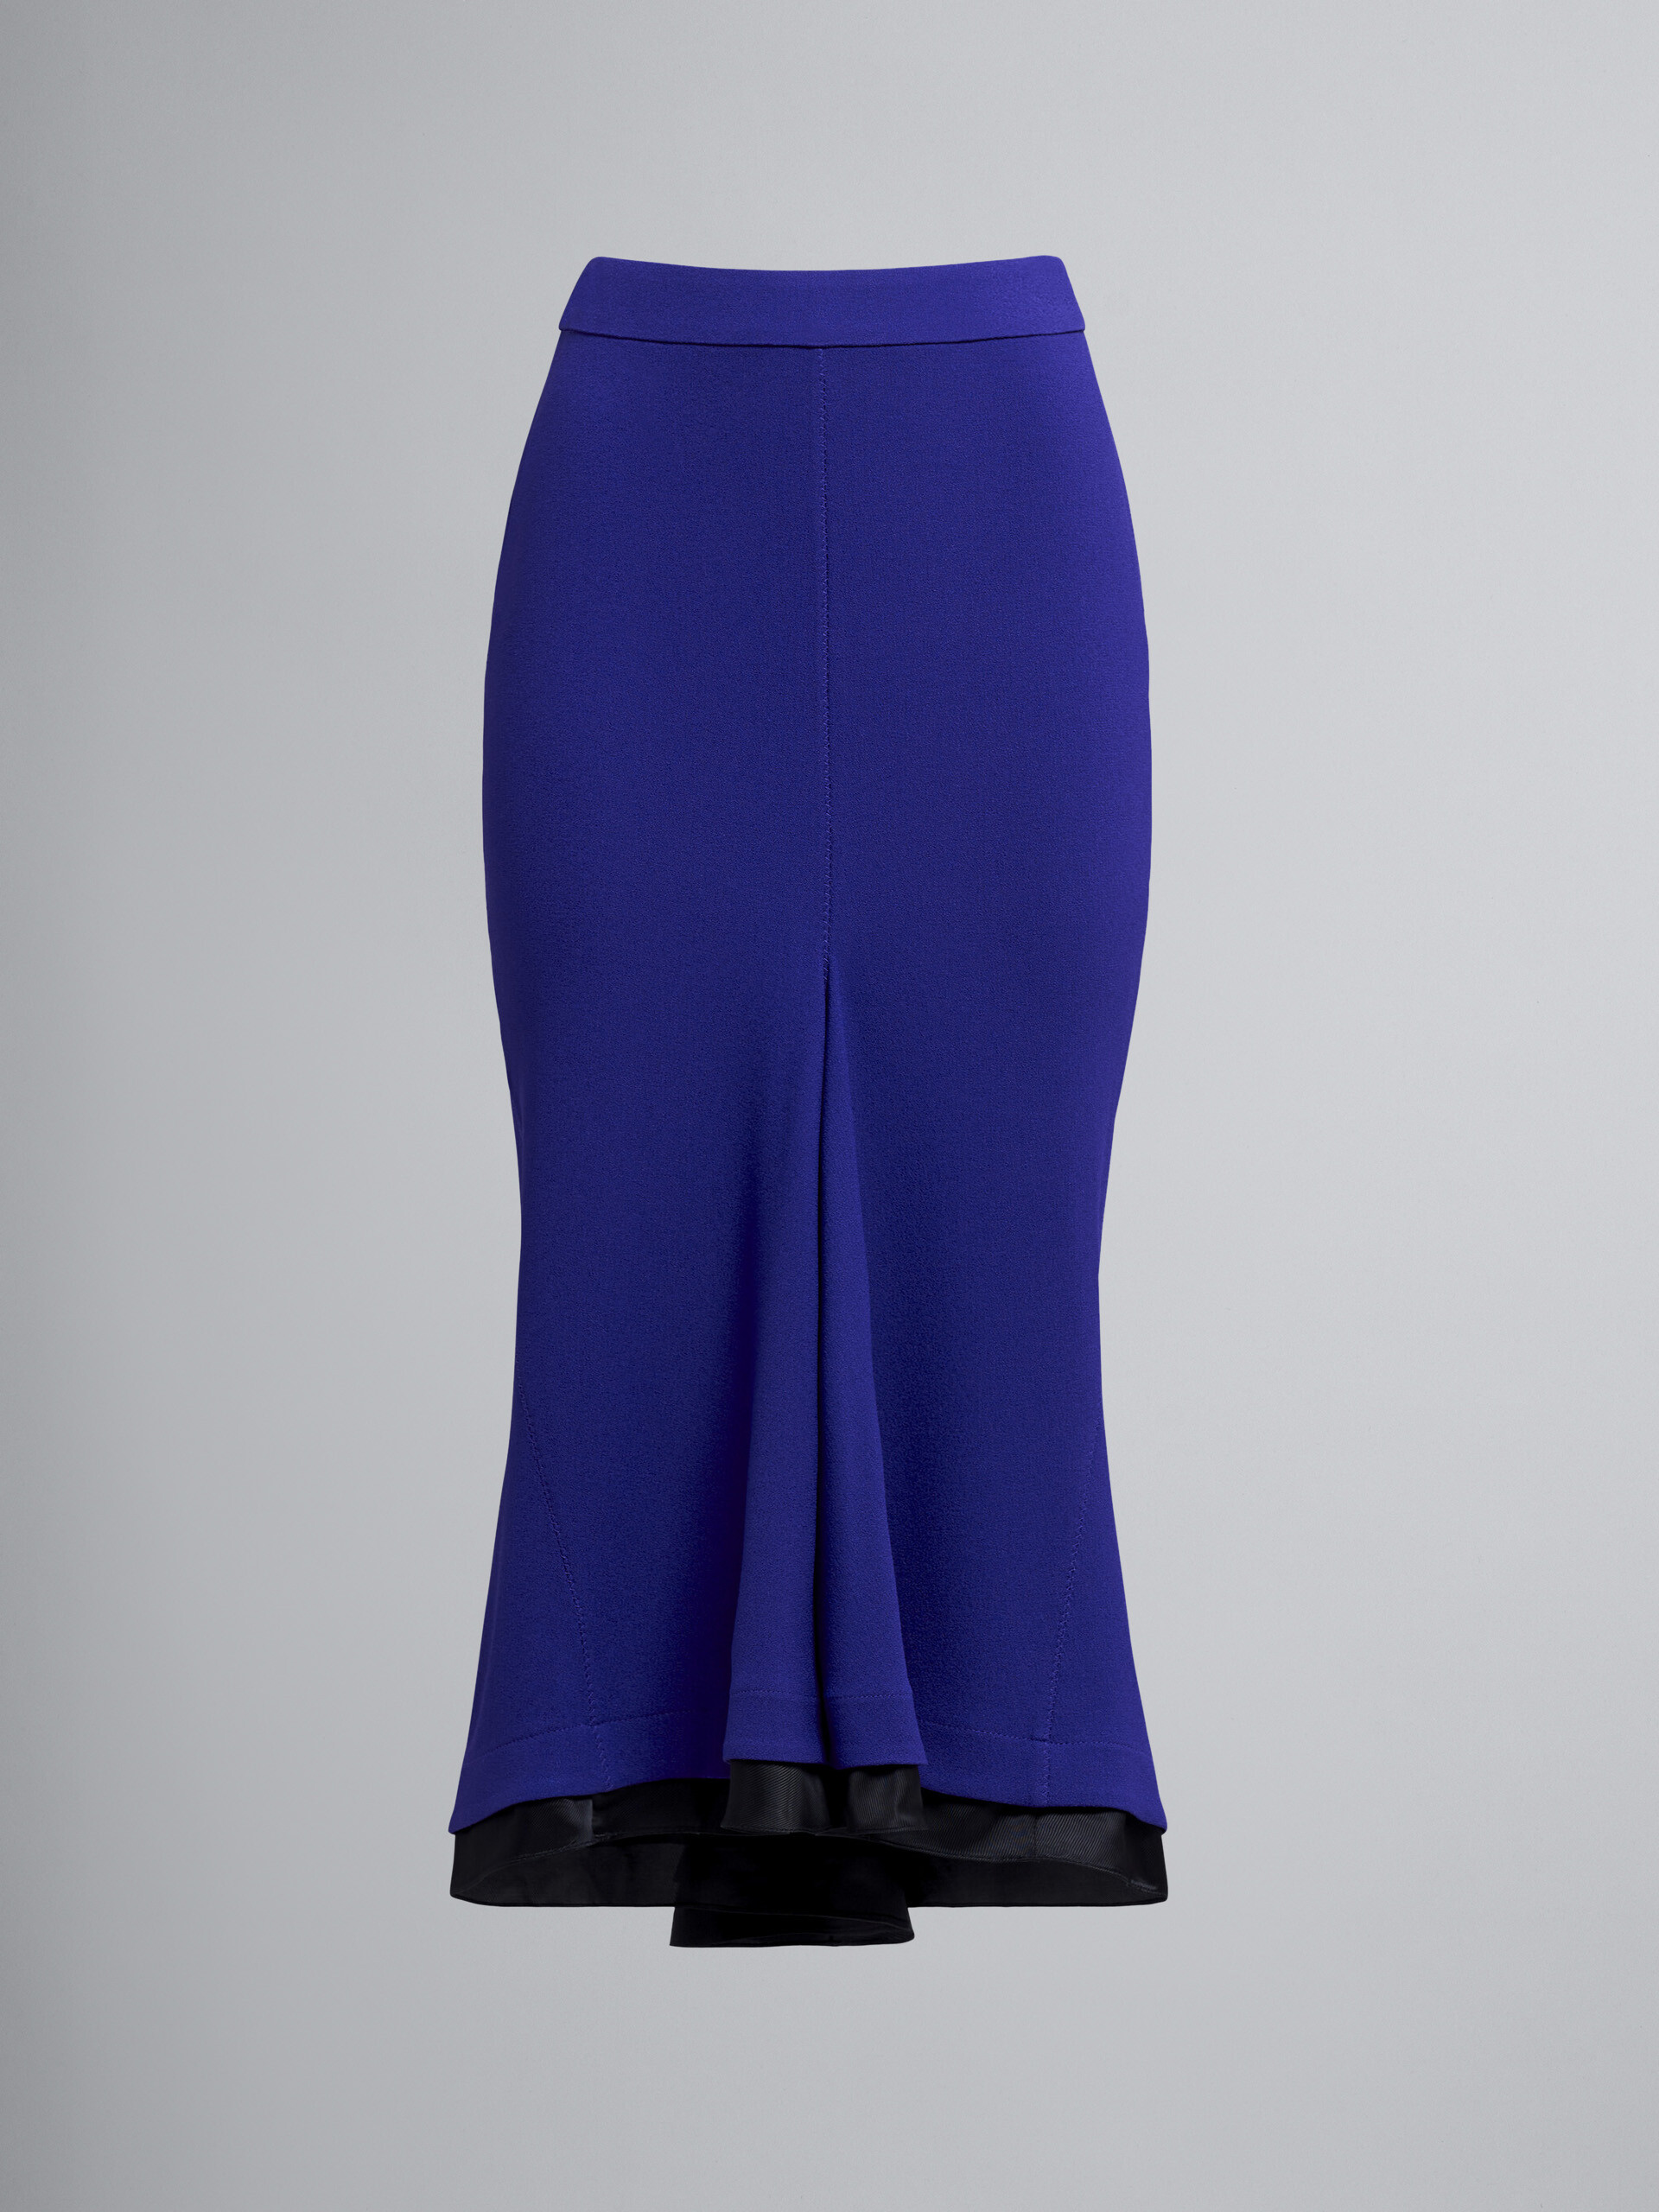 Sablé crepe skirt - Skirts - Image 1